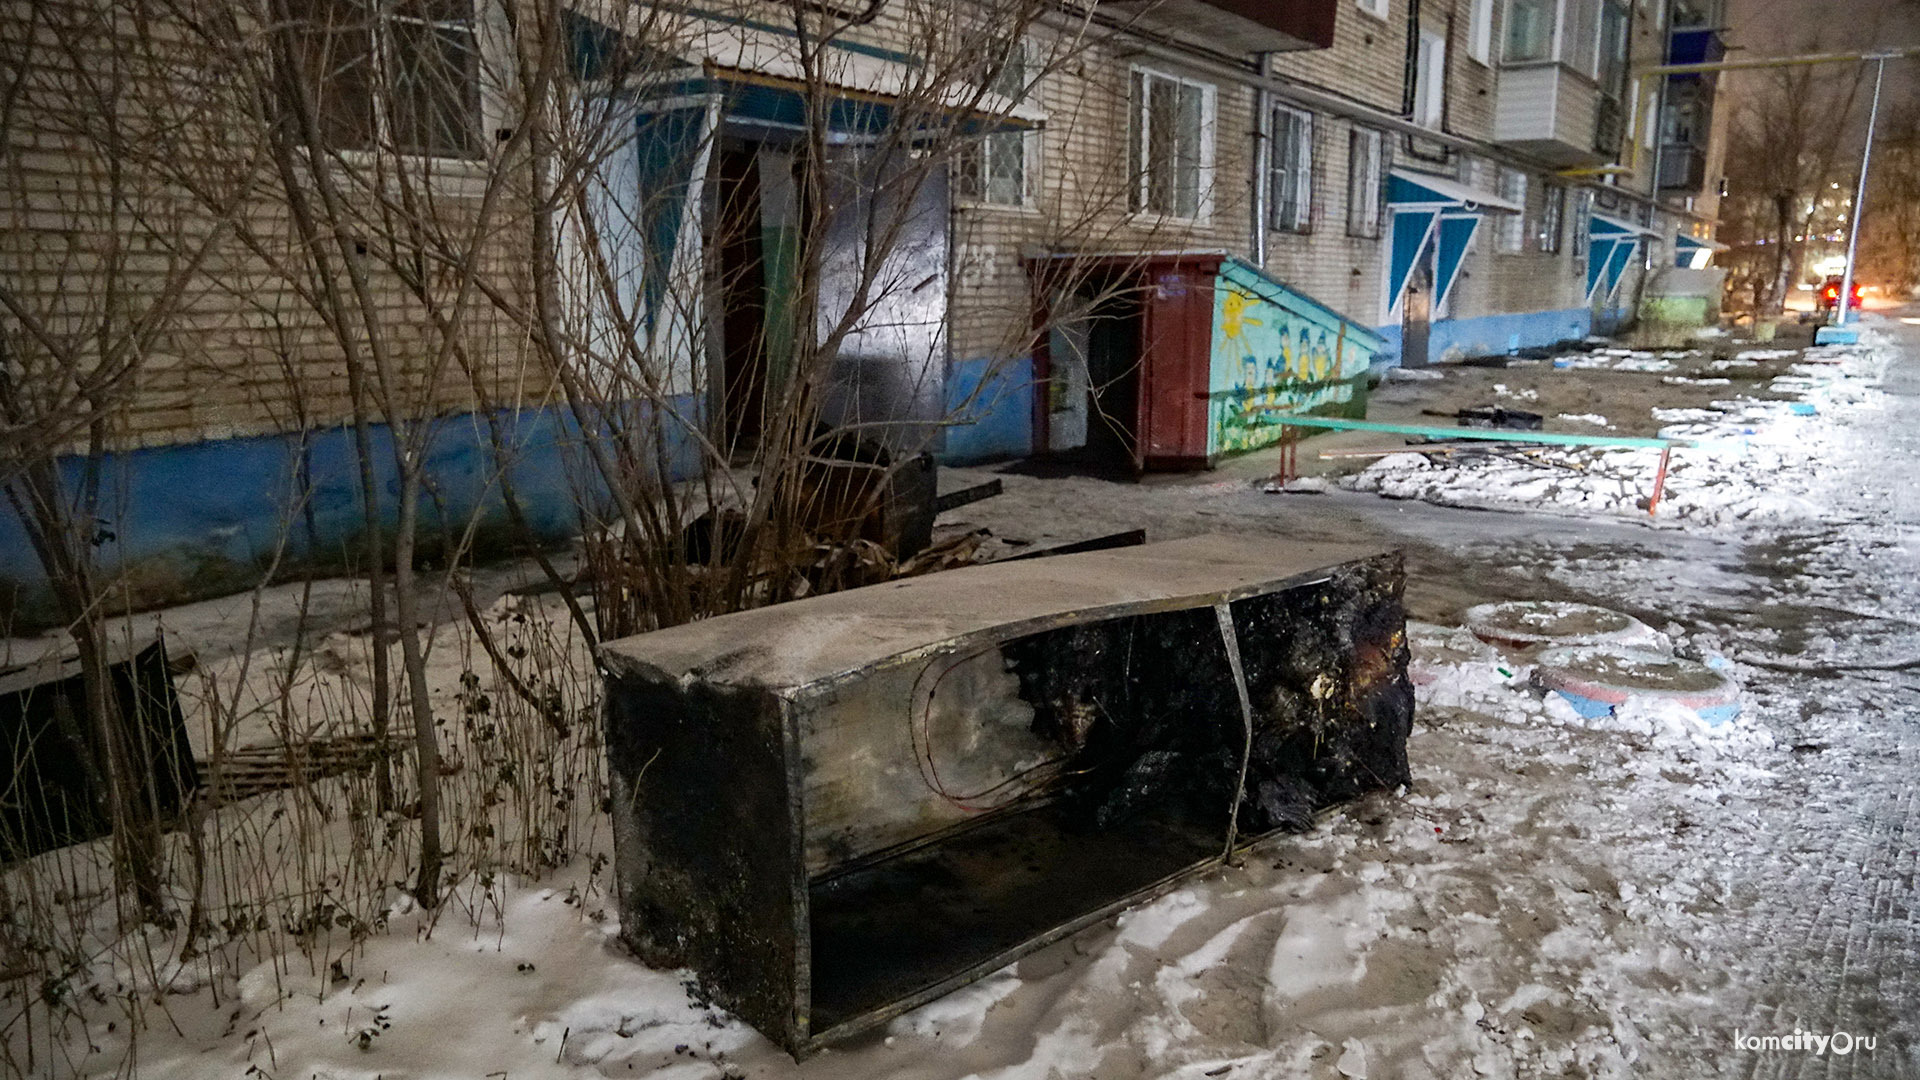 Причиной пожара, едва не унёсшего жизнь трёх человек в Комсомольске-на-Амуре, стал неисправный электроприбор